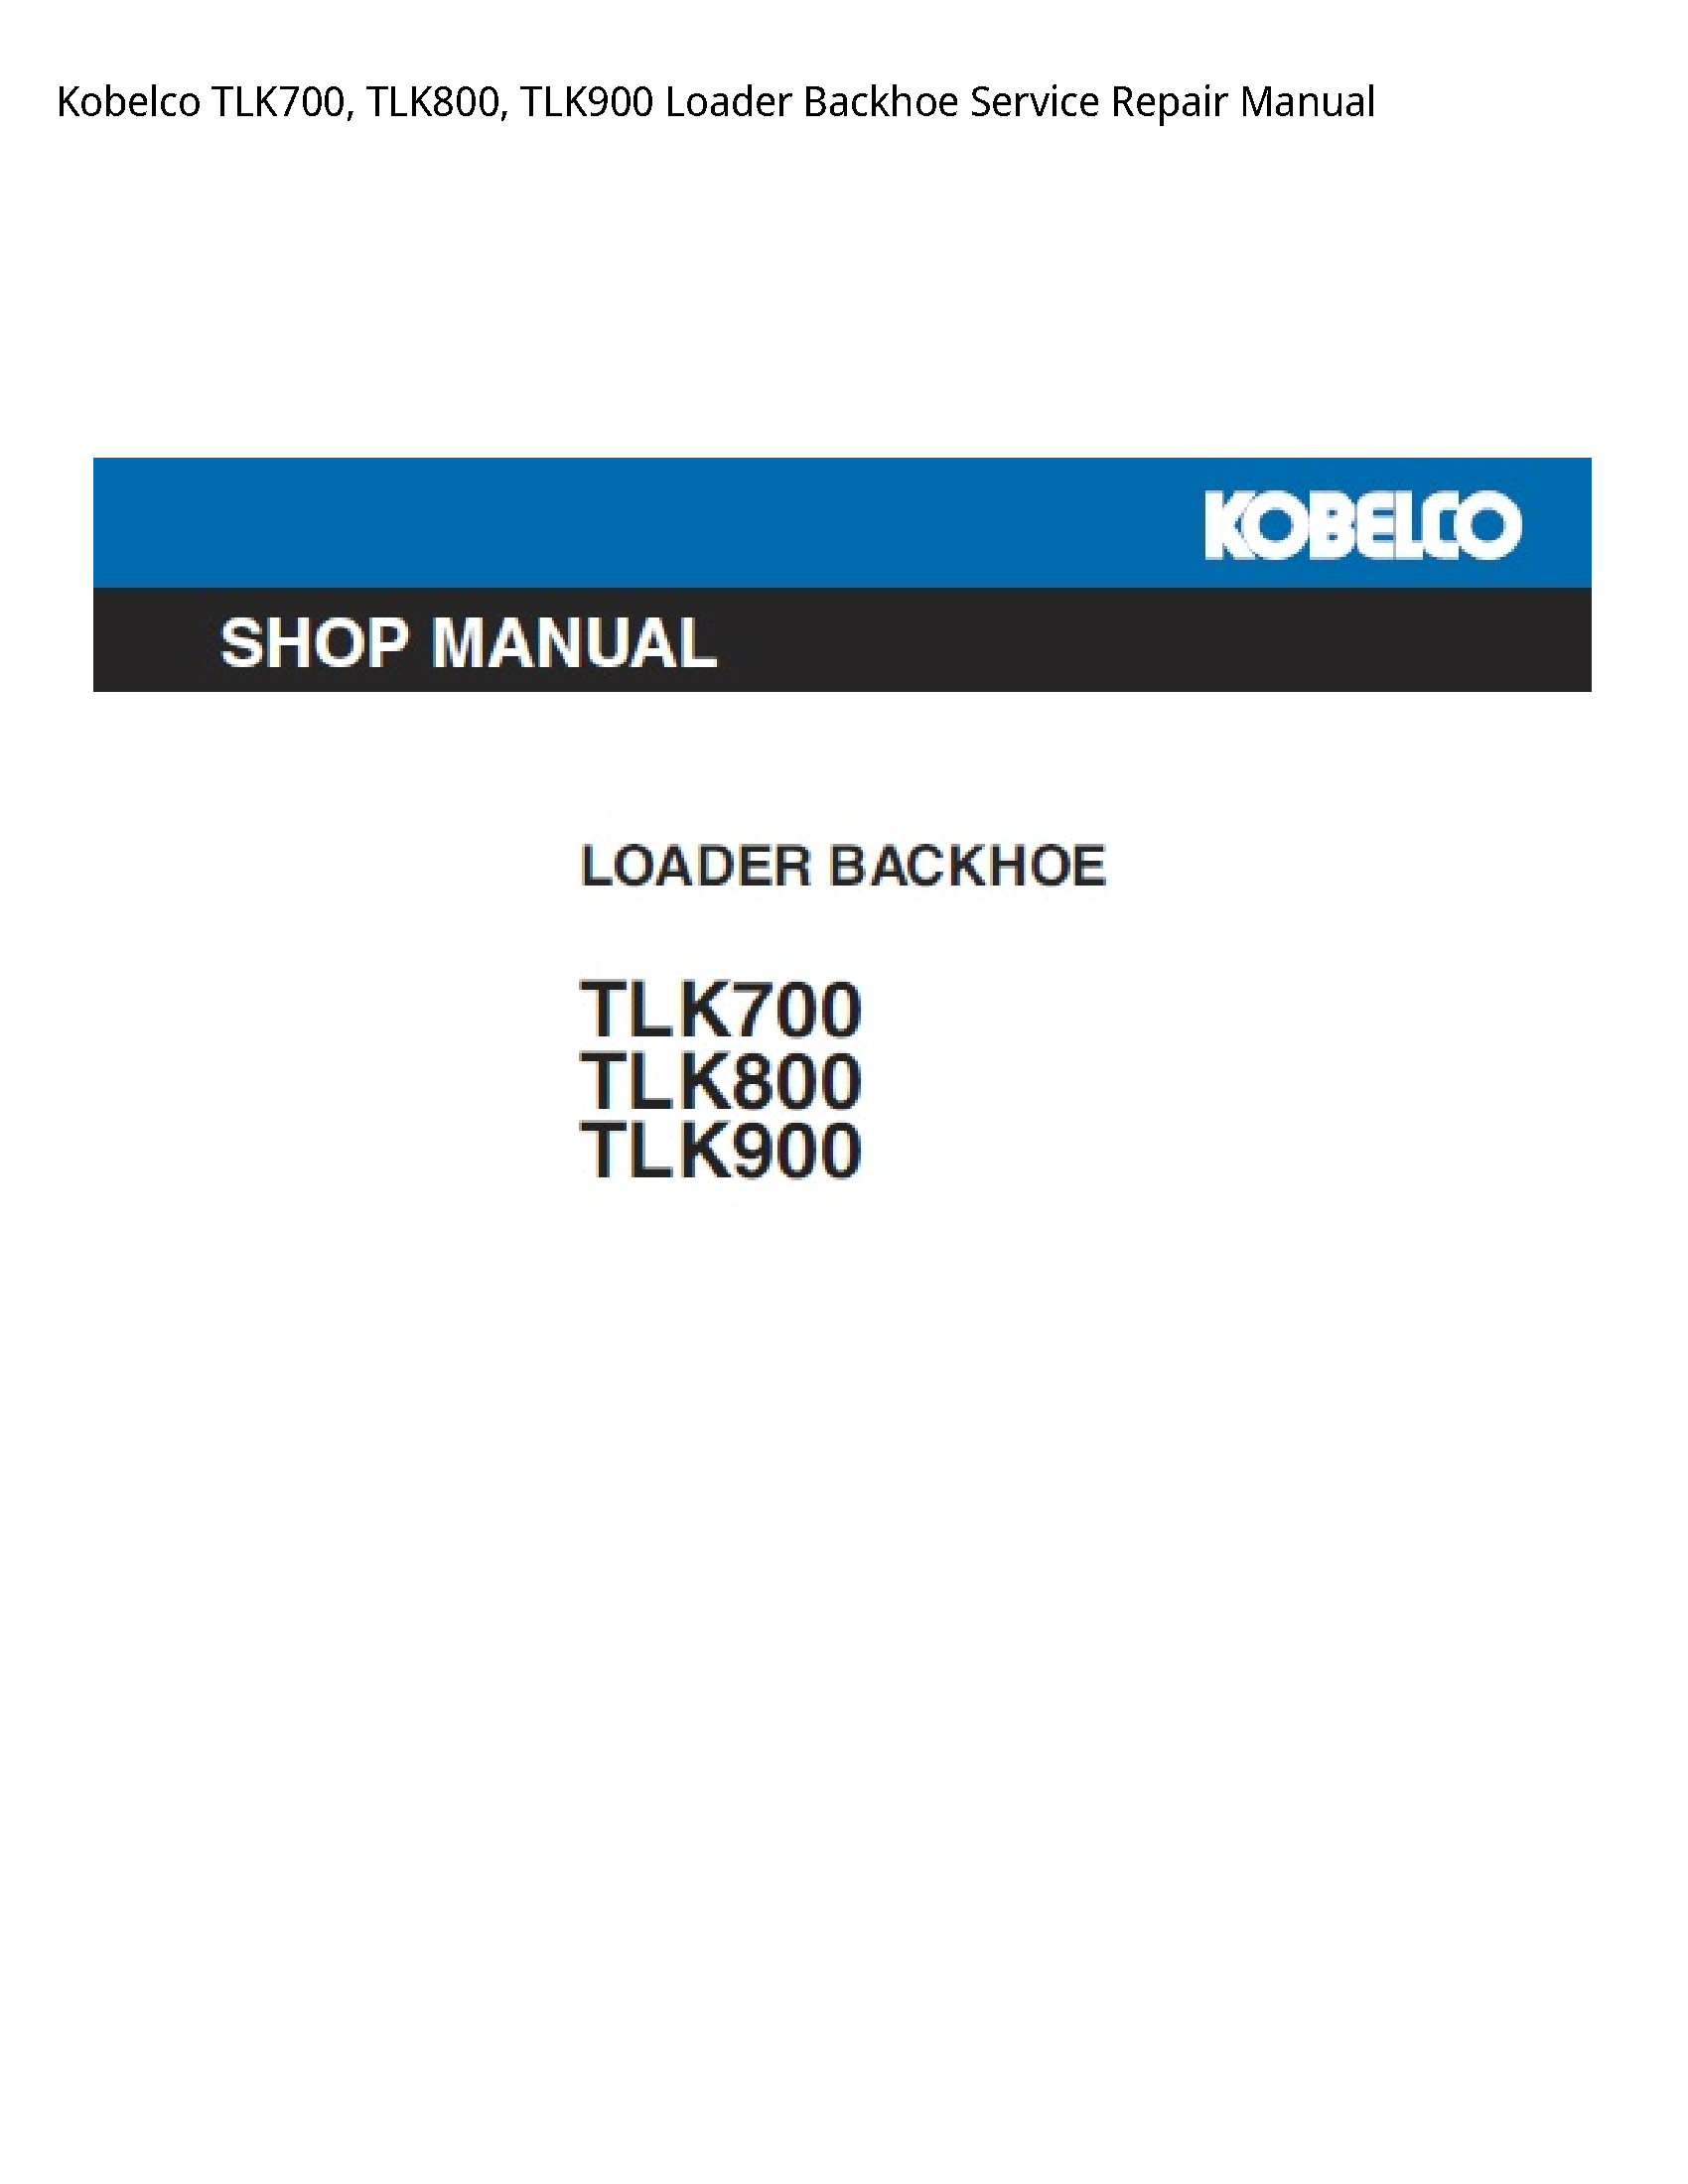 Kobelco TLK700 Loader Backhoe manual